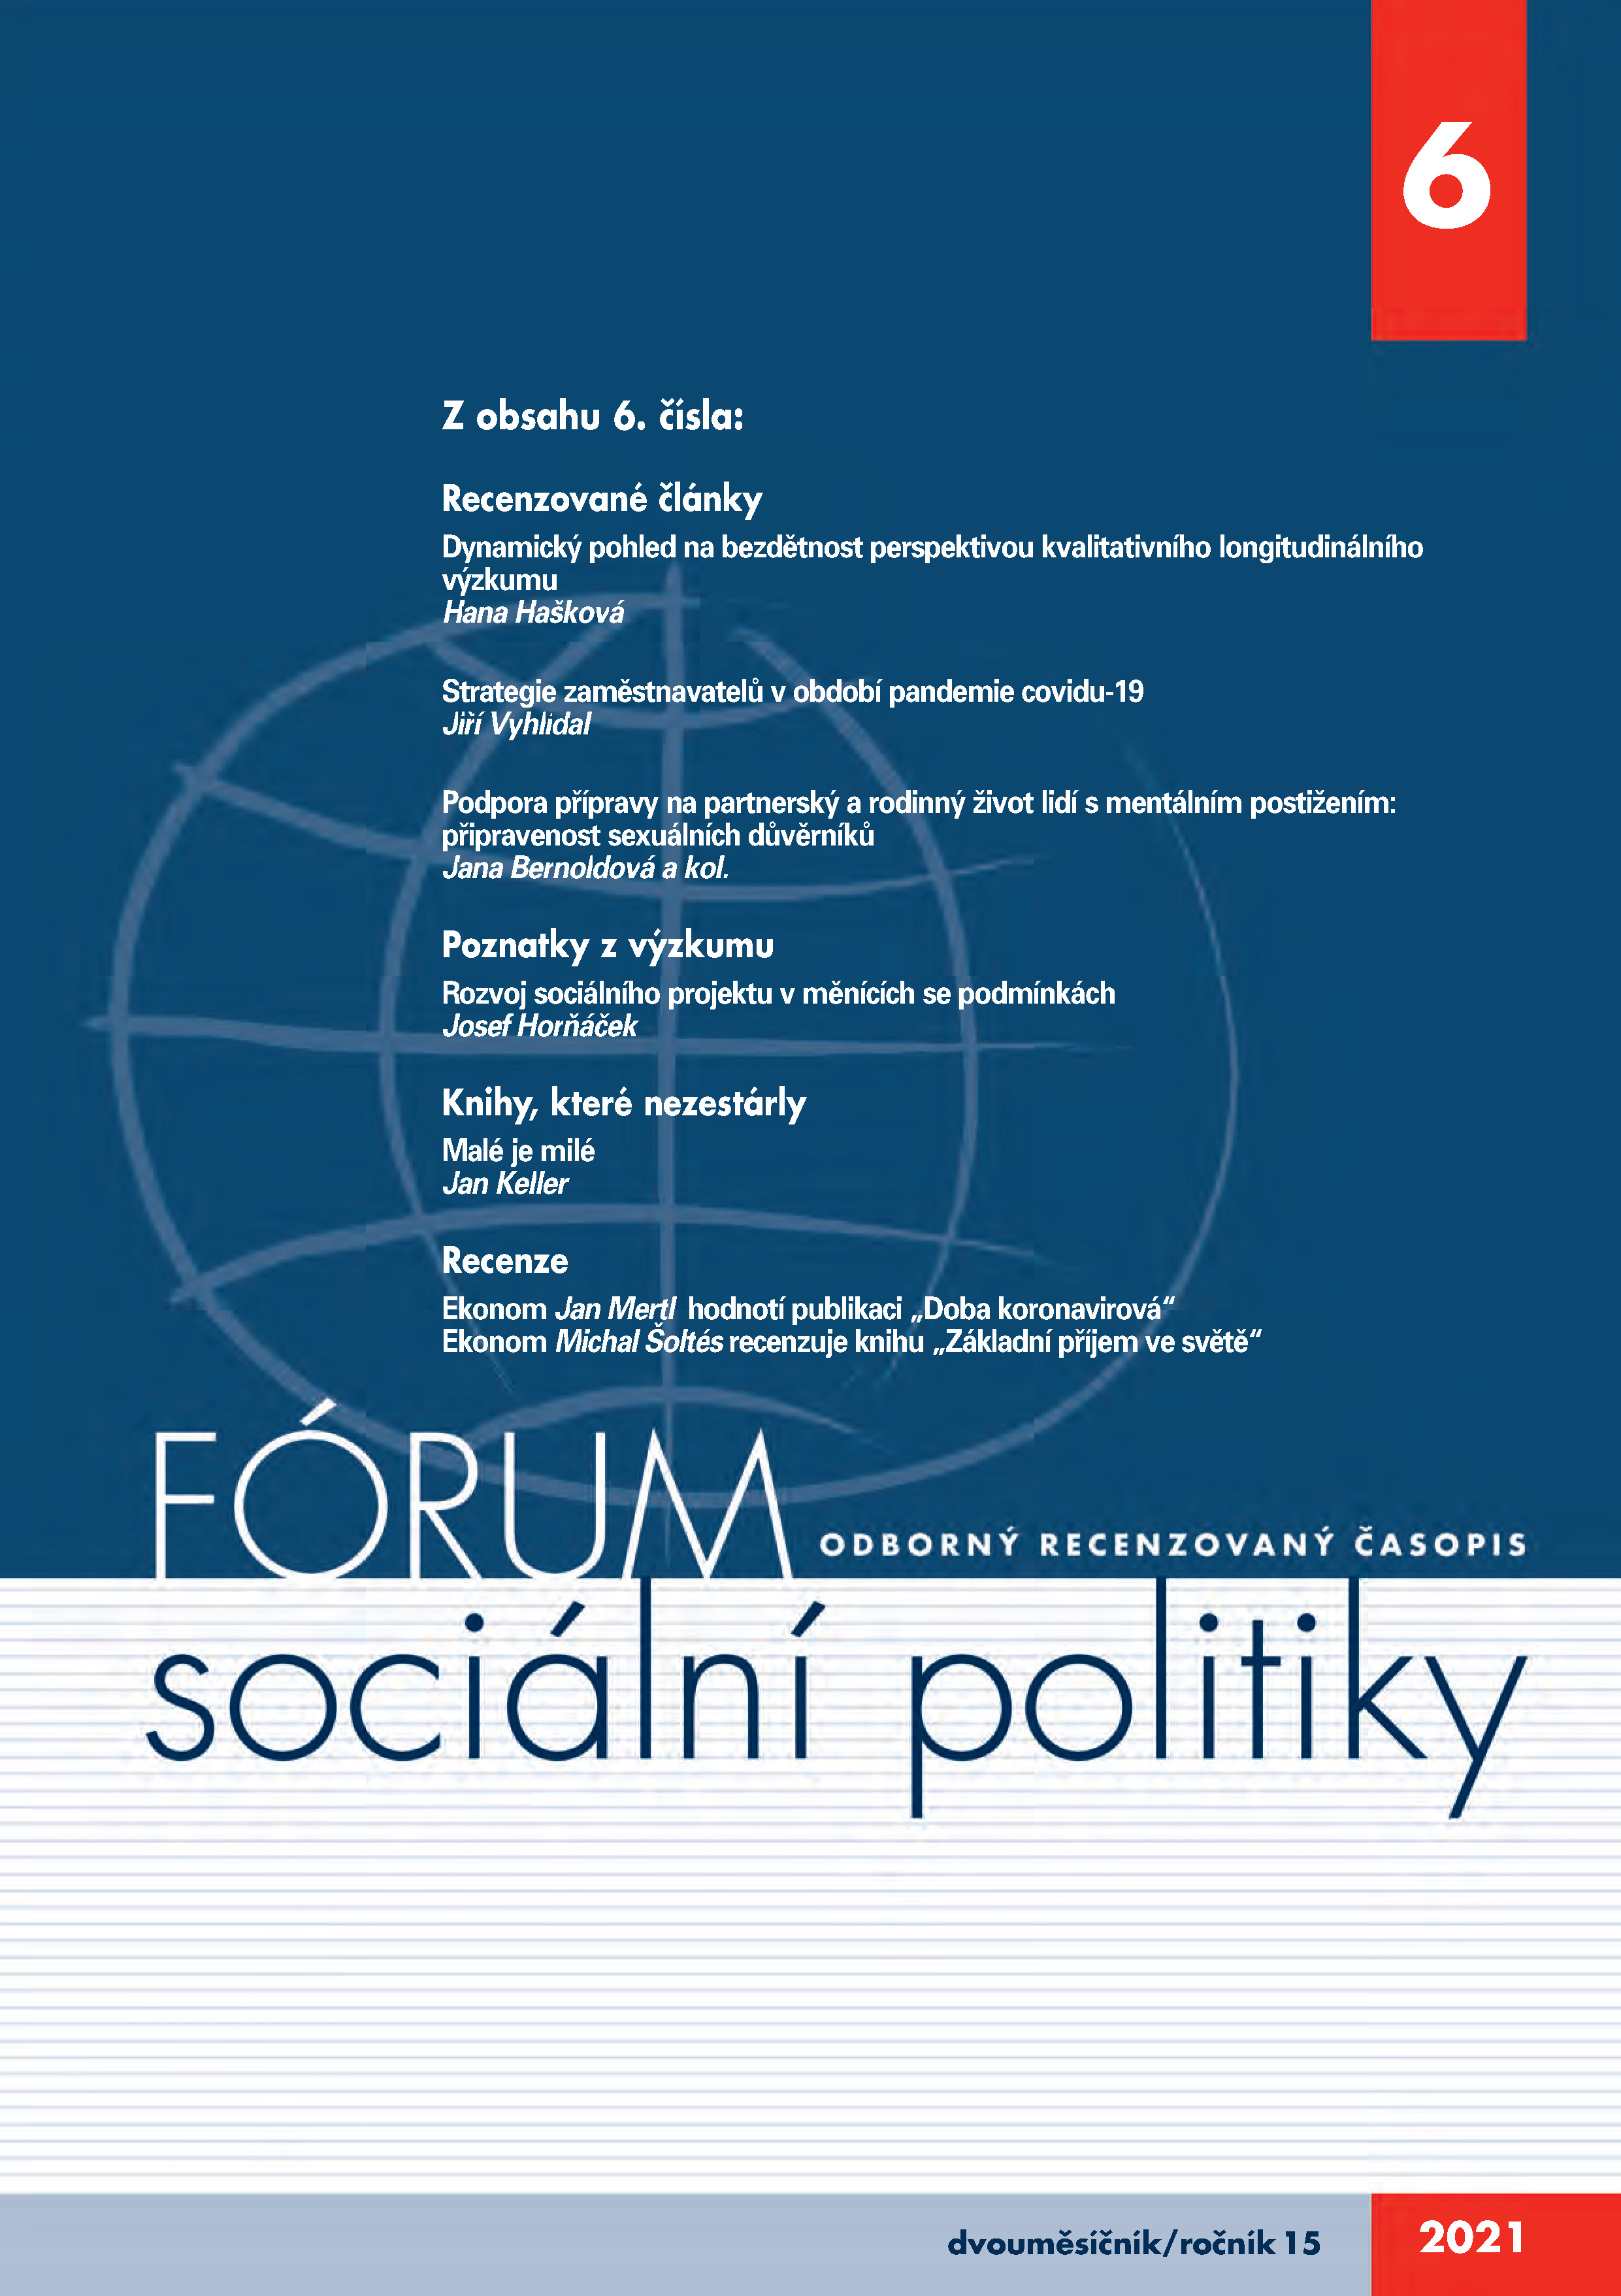 Vyšlo 6. číslo časopisu Fórum sociální politiky:  mj. o bezdětnosti, sexuálních důvěrnících a strategiích zaměstnavatelů během koronavirové pandemie